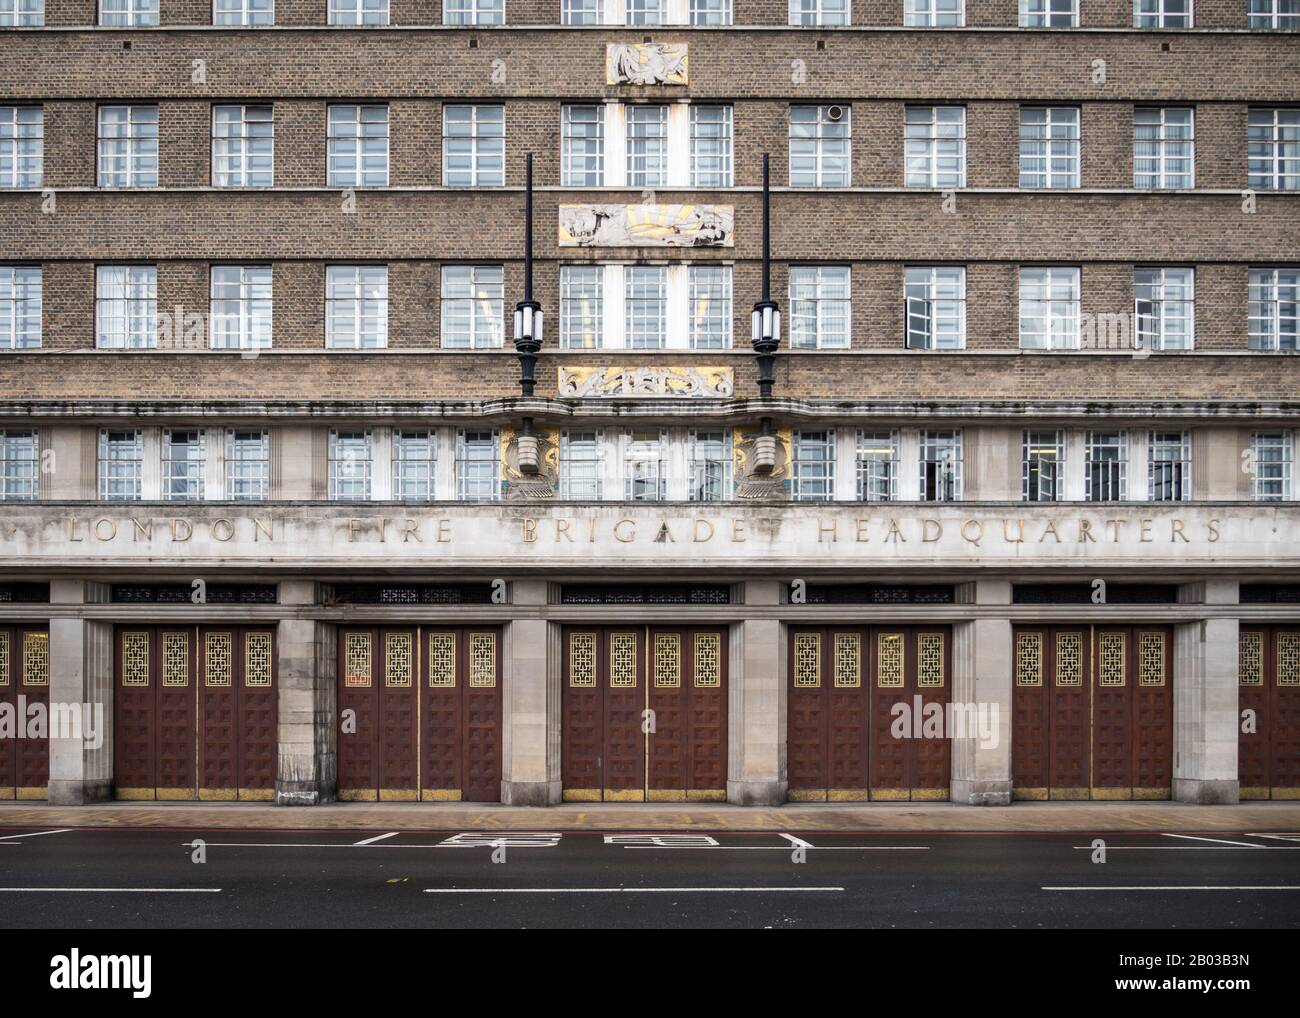 Sede Centrale Dei Vigili Del Fuoco Di Londra. La facciata architettonica art deco alla sede centrale del London Fire Bridge su Albert Embankment, Londra, Regno Unito. Foto Stock